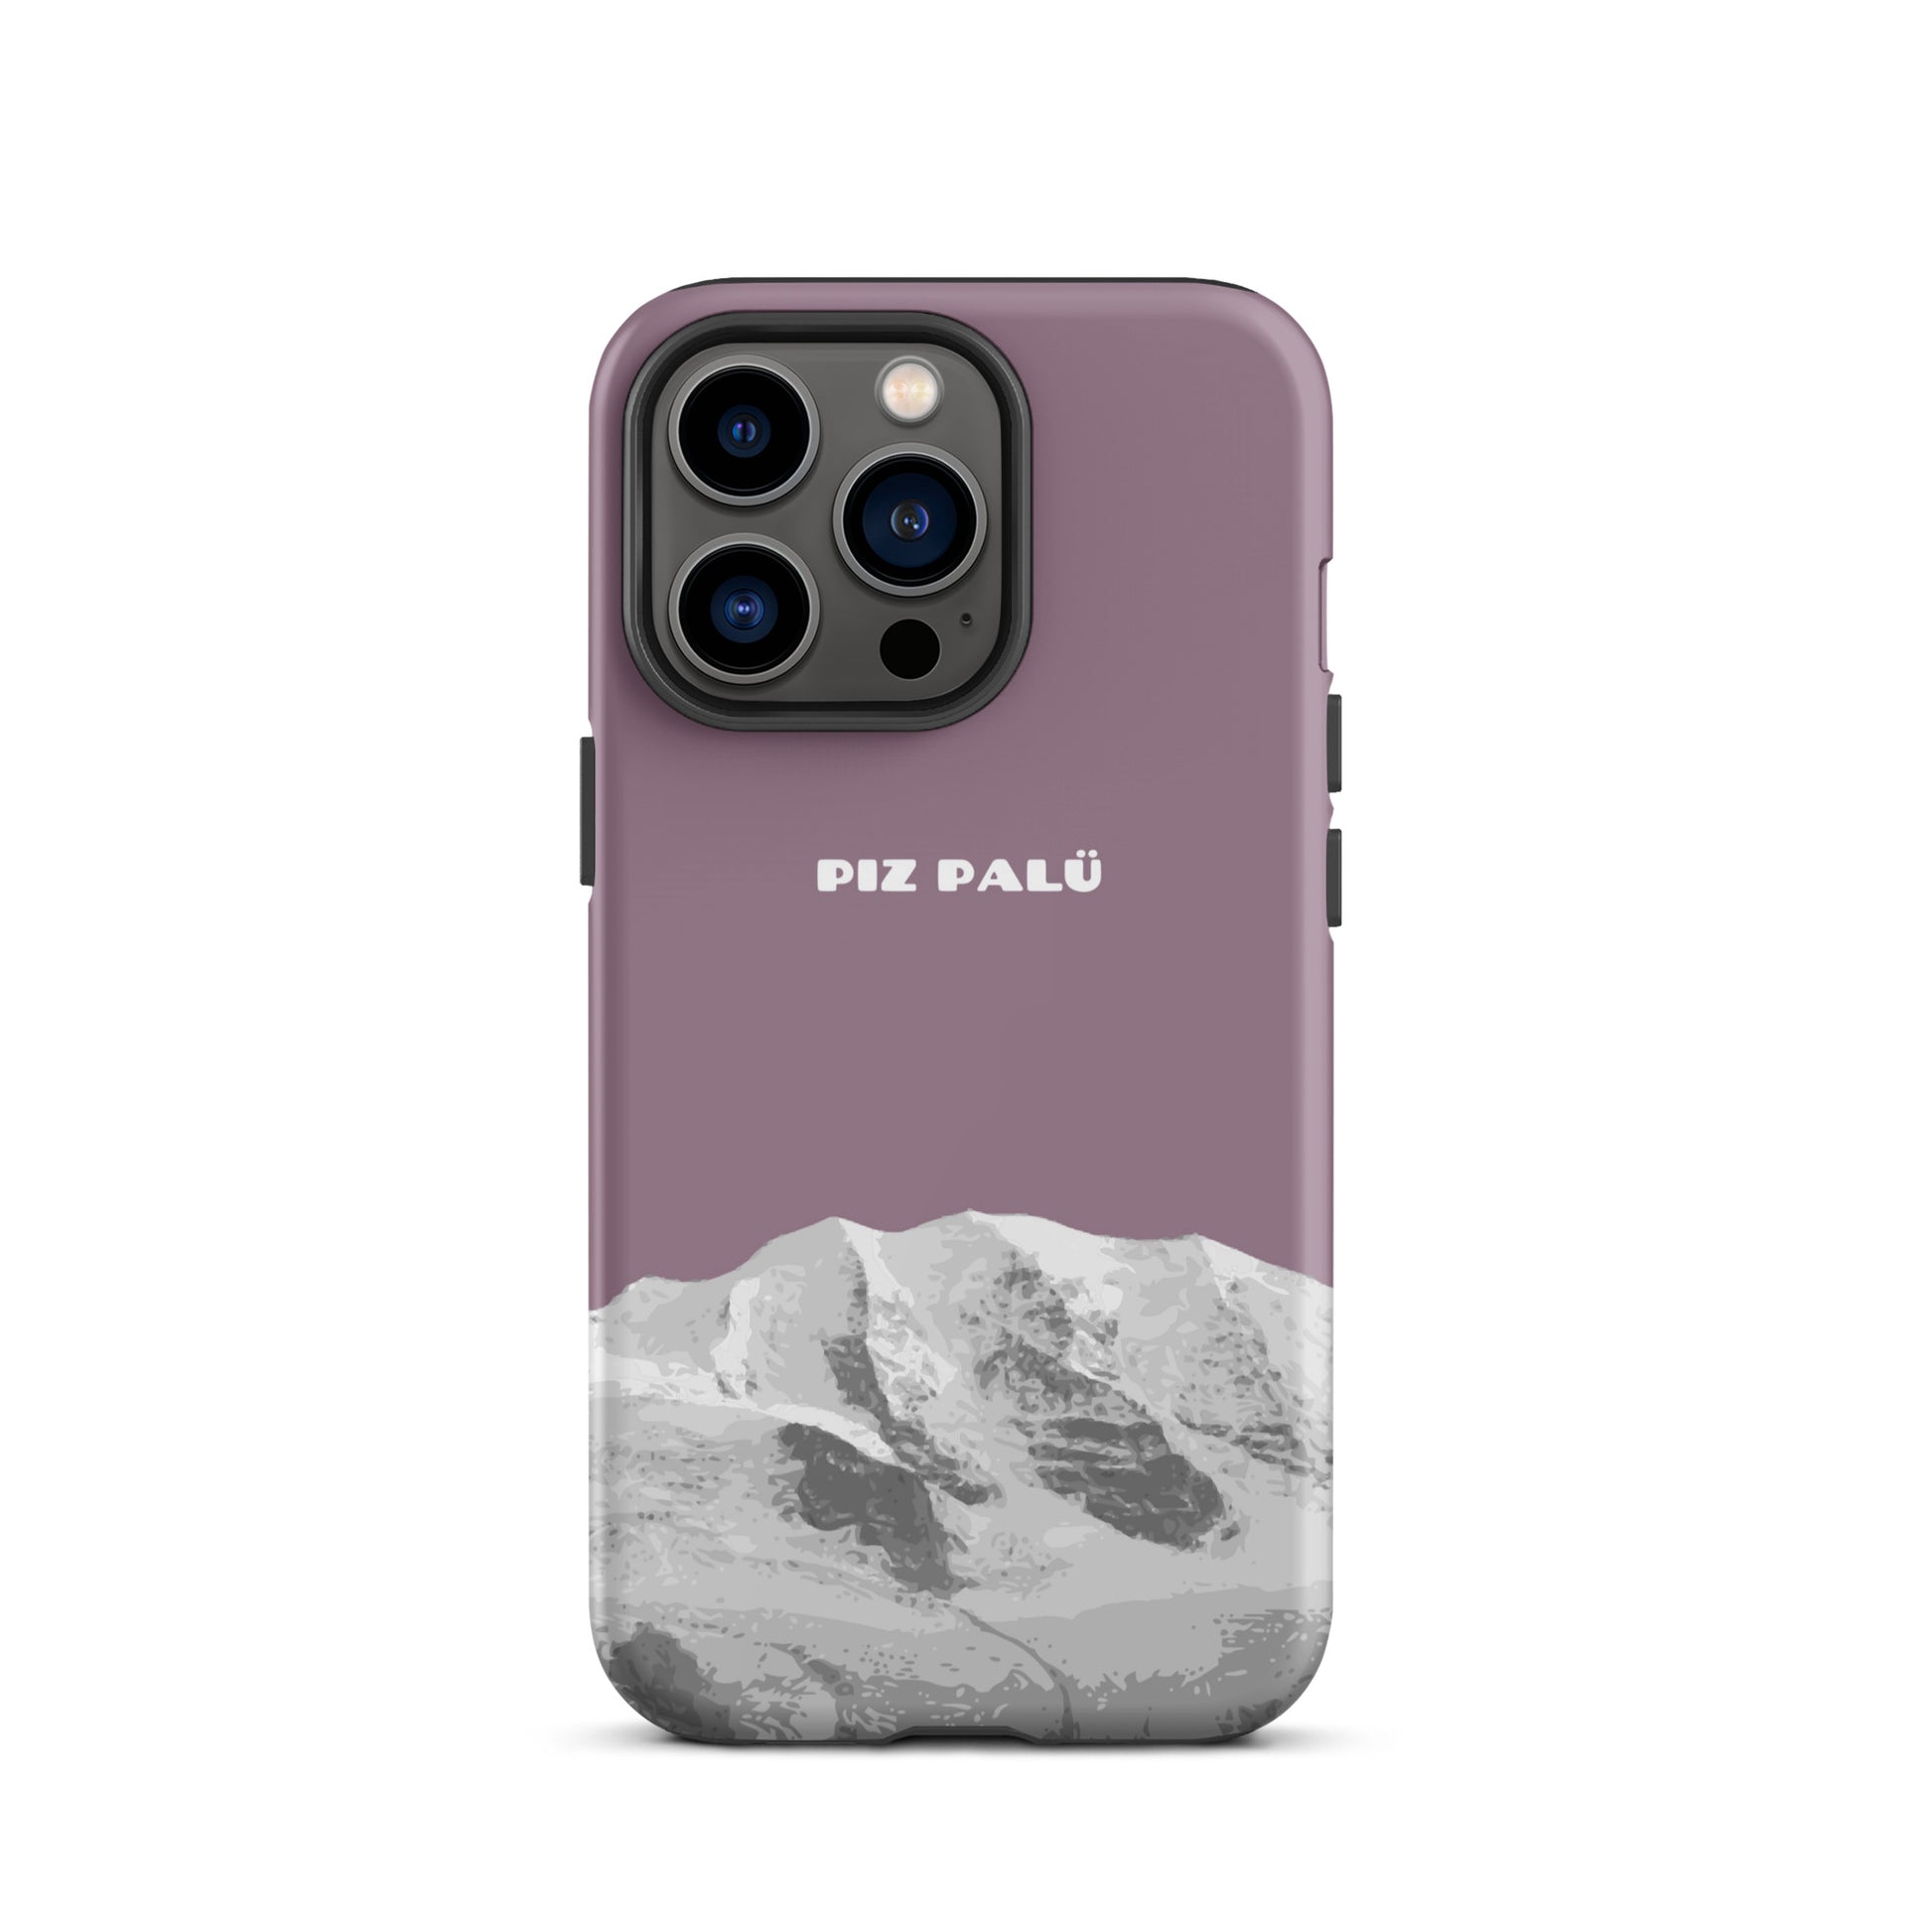 Hülle für das iPhone 13 Pro von Apple in der Farbe Pastellviolett, dass den Piz Palü in Graubünden zeigt.